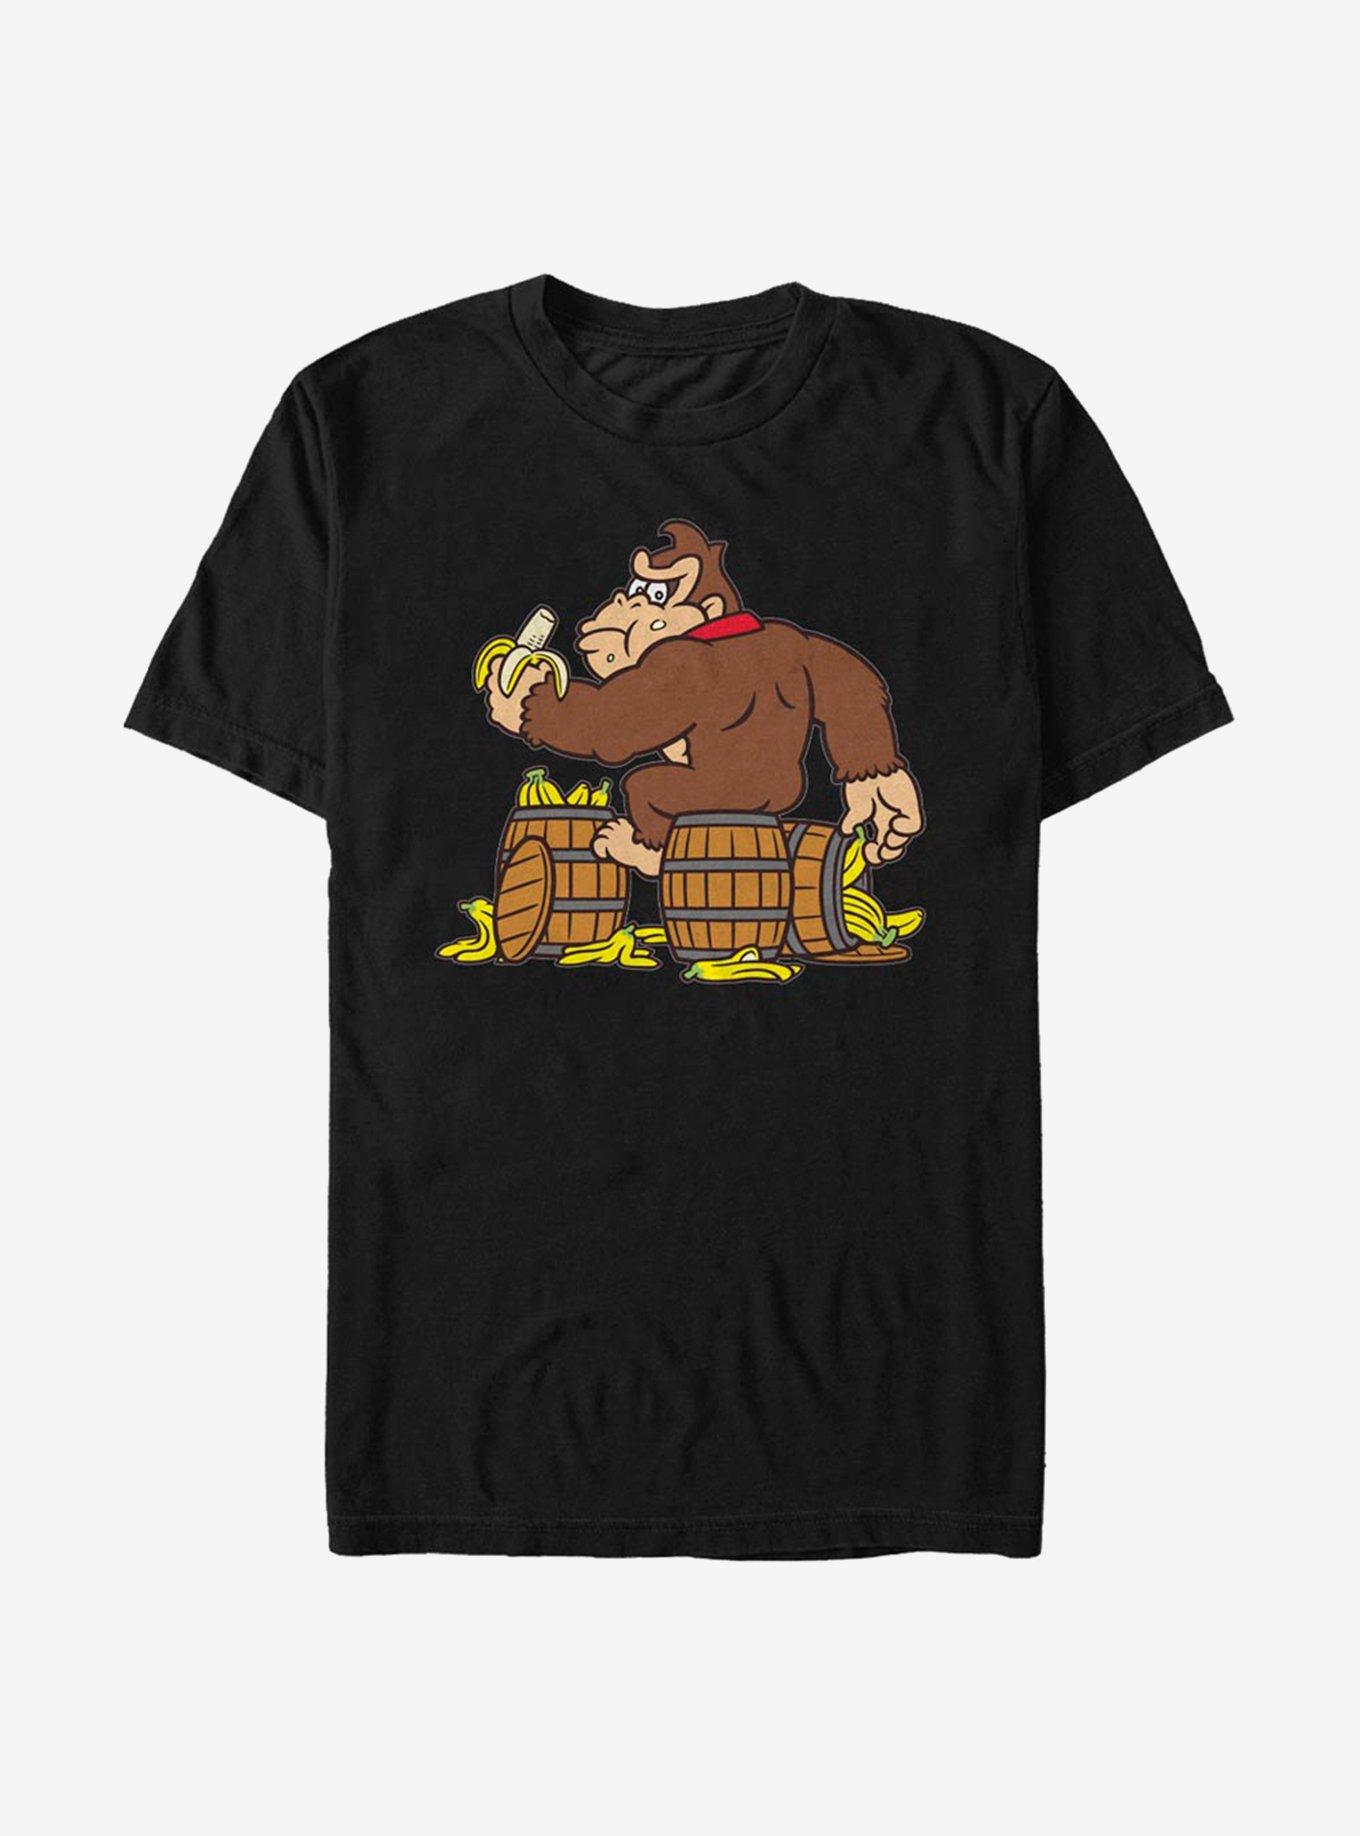 Super Mario Barrels Of Bananas T-Shirt